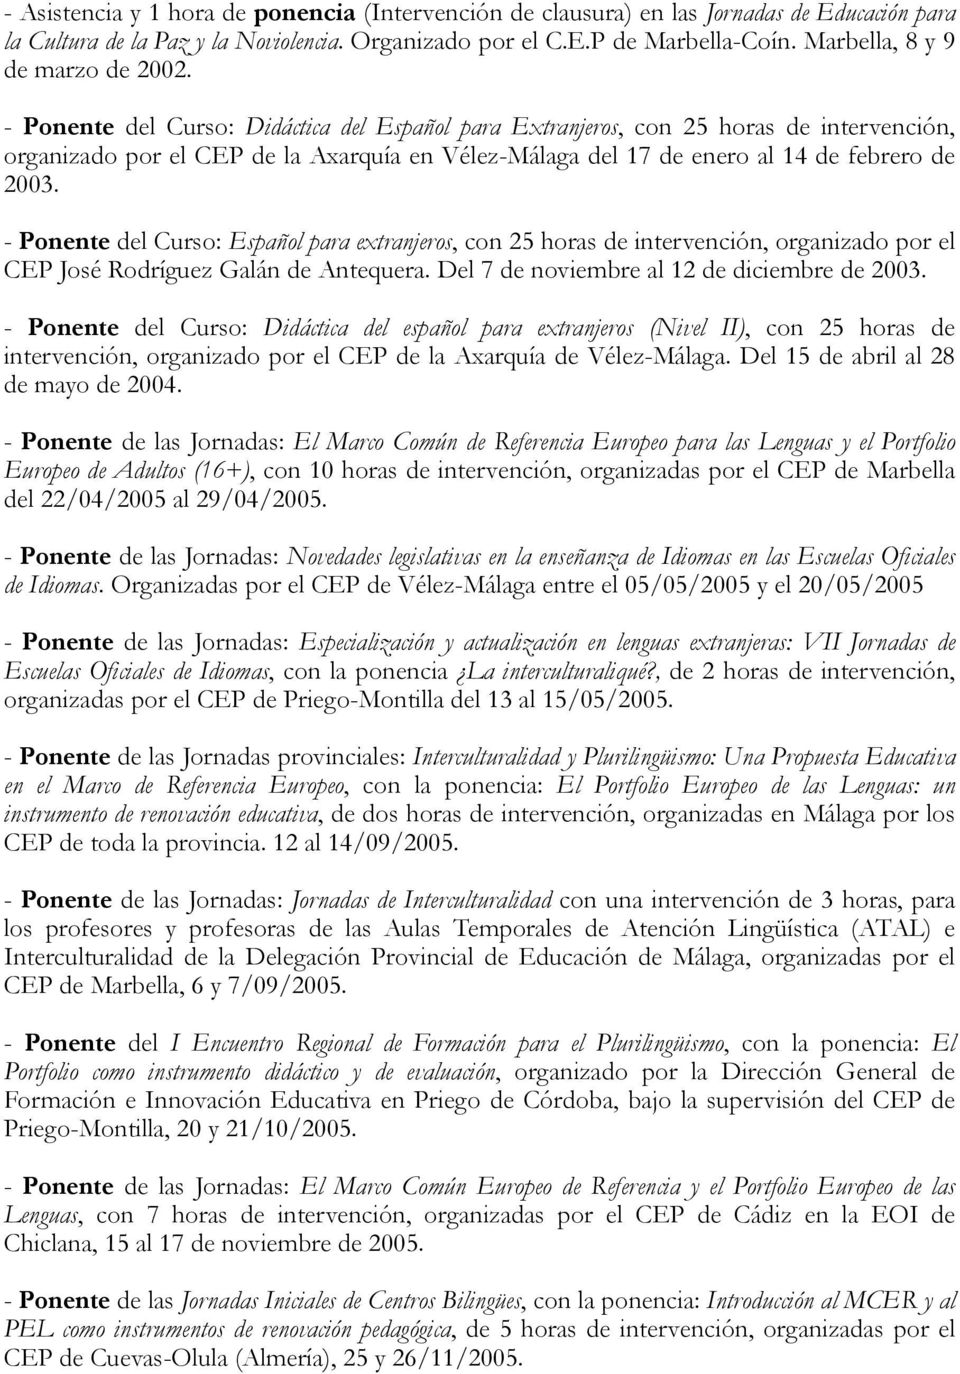 - Ponente del Curso: Didáctica del Español para Extranjeros, con 25 horas de intervención, organizado por el CEP de la Axarquía en Vélez-Málaga del 17 de enero al 14 de febrero de 2003.